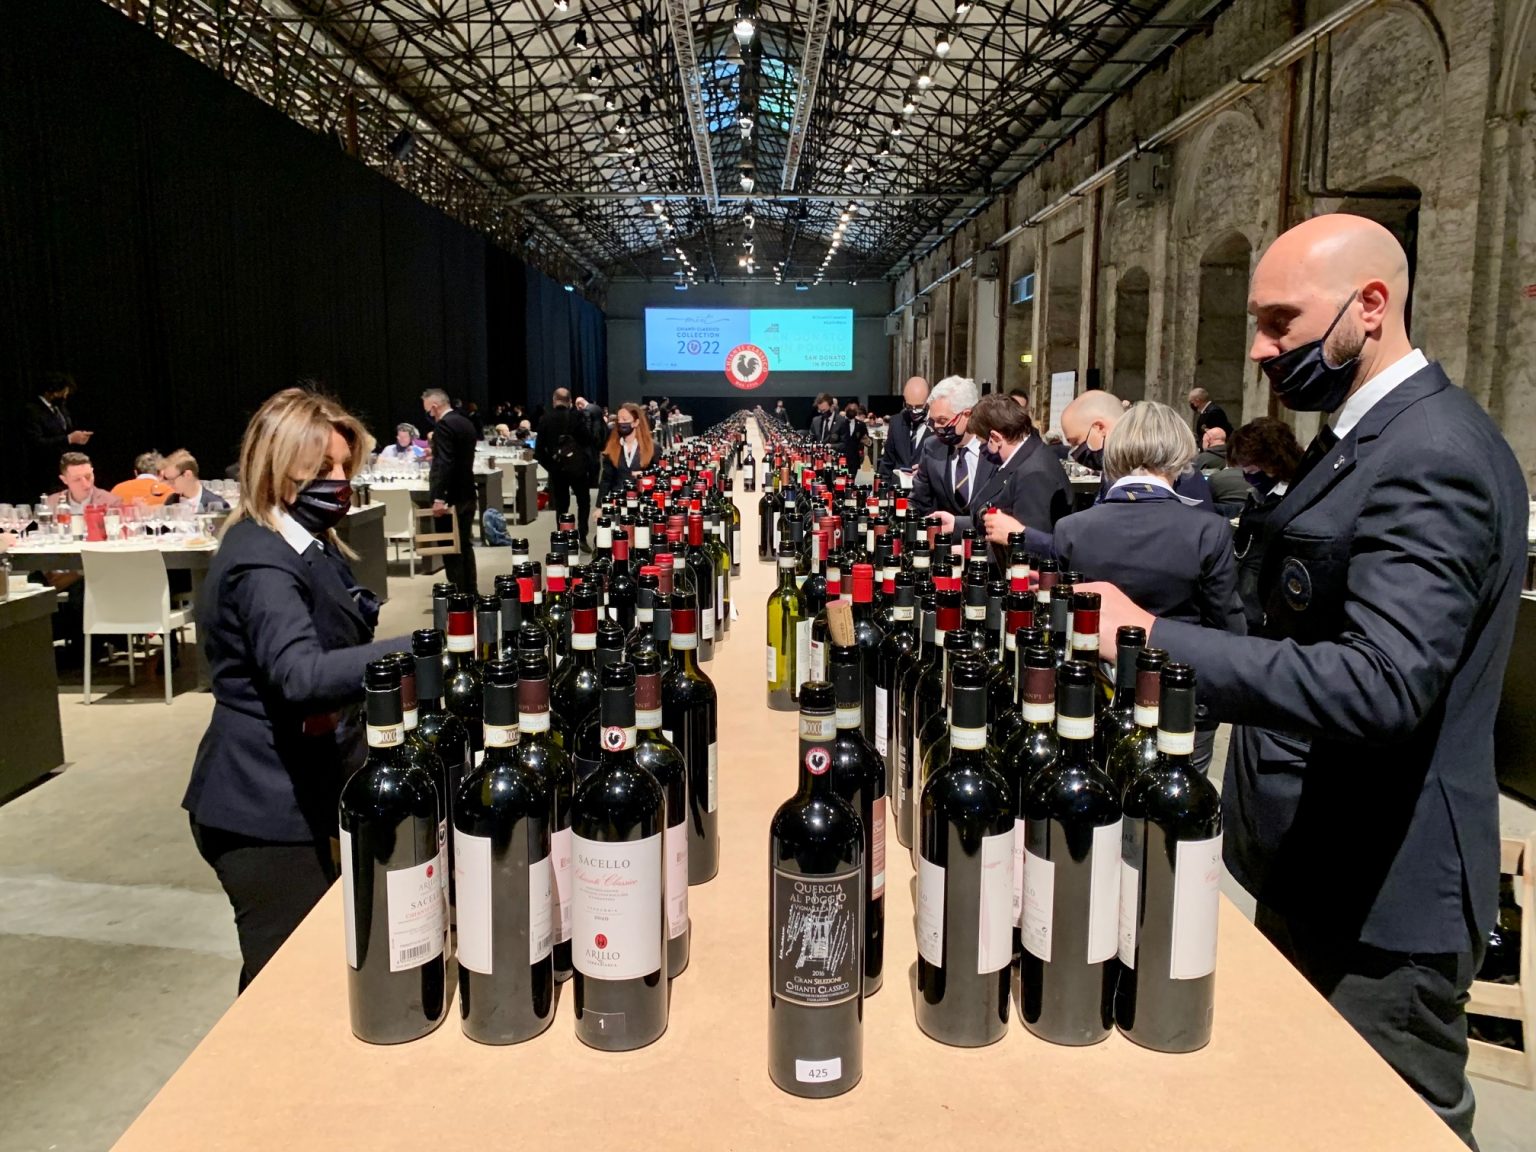 Anteprime Toscane 2022 Chianti Classico Collection WinesCritic